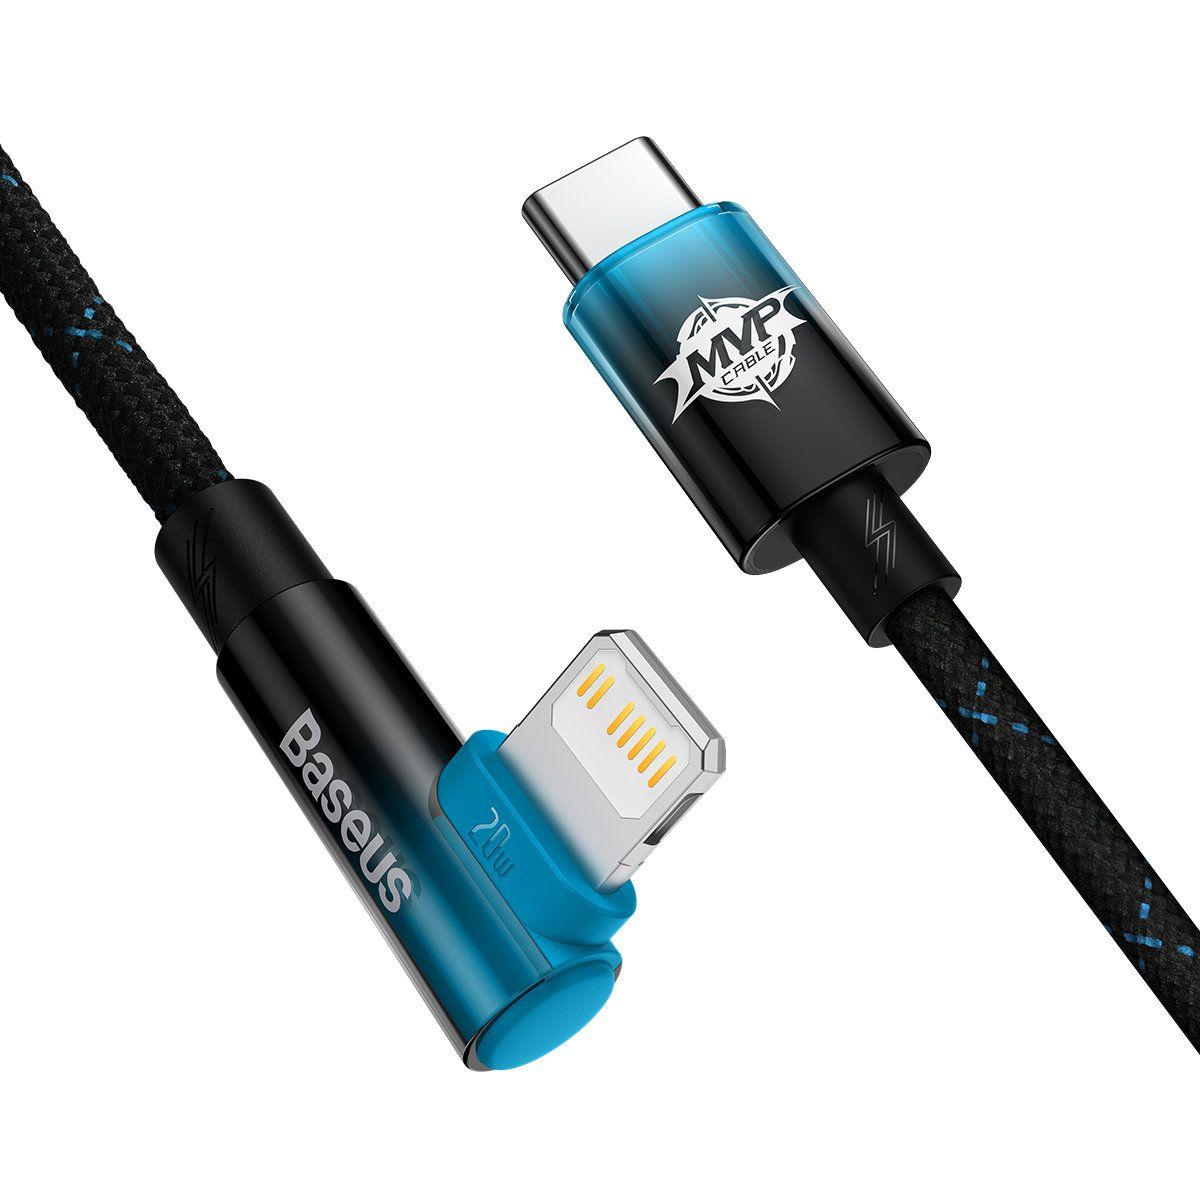 Baseus MVP 2 Elbow kątowy kabel przewód Power Delivery z bocznym wtykiem USB Typ C / Lightning 2m 20W niebieski (CAVP000321)